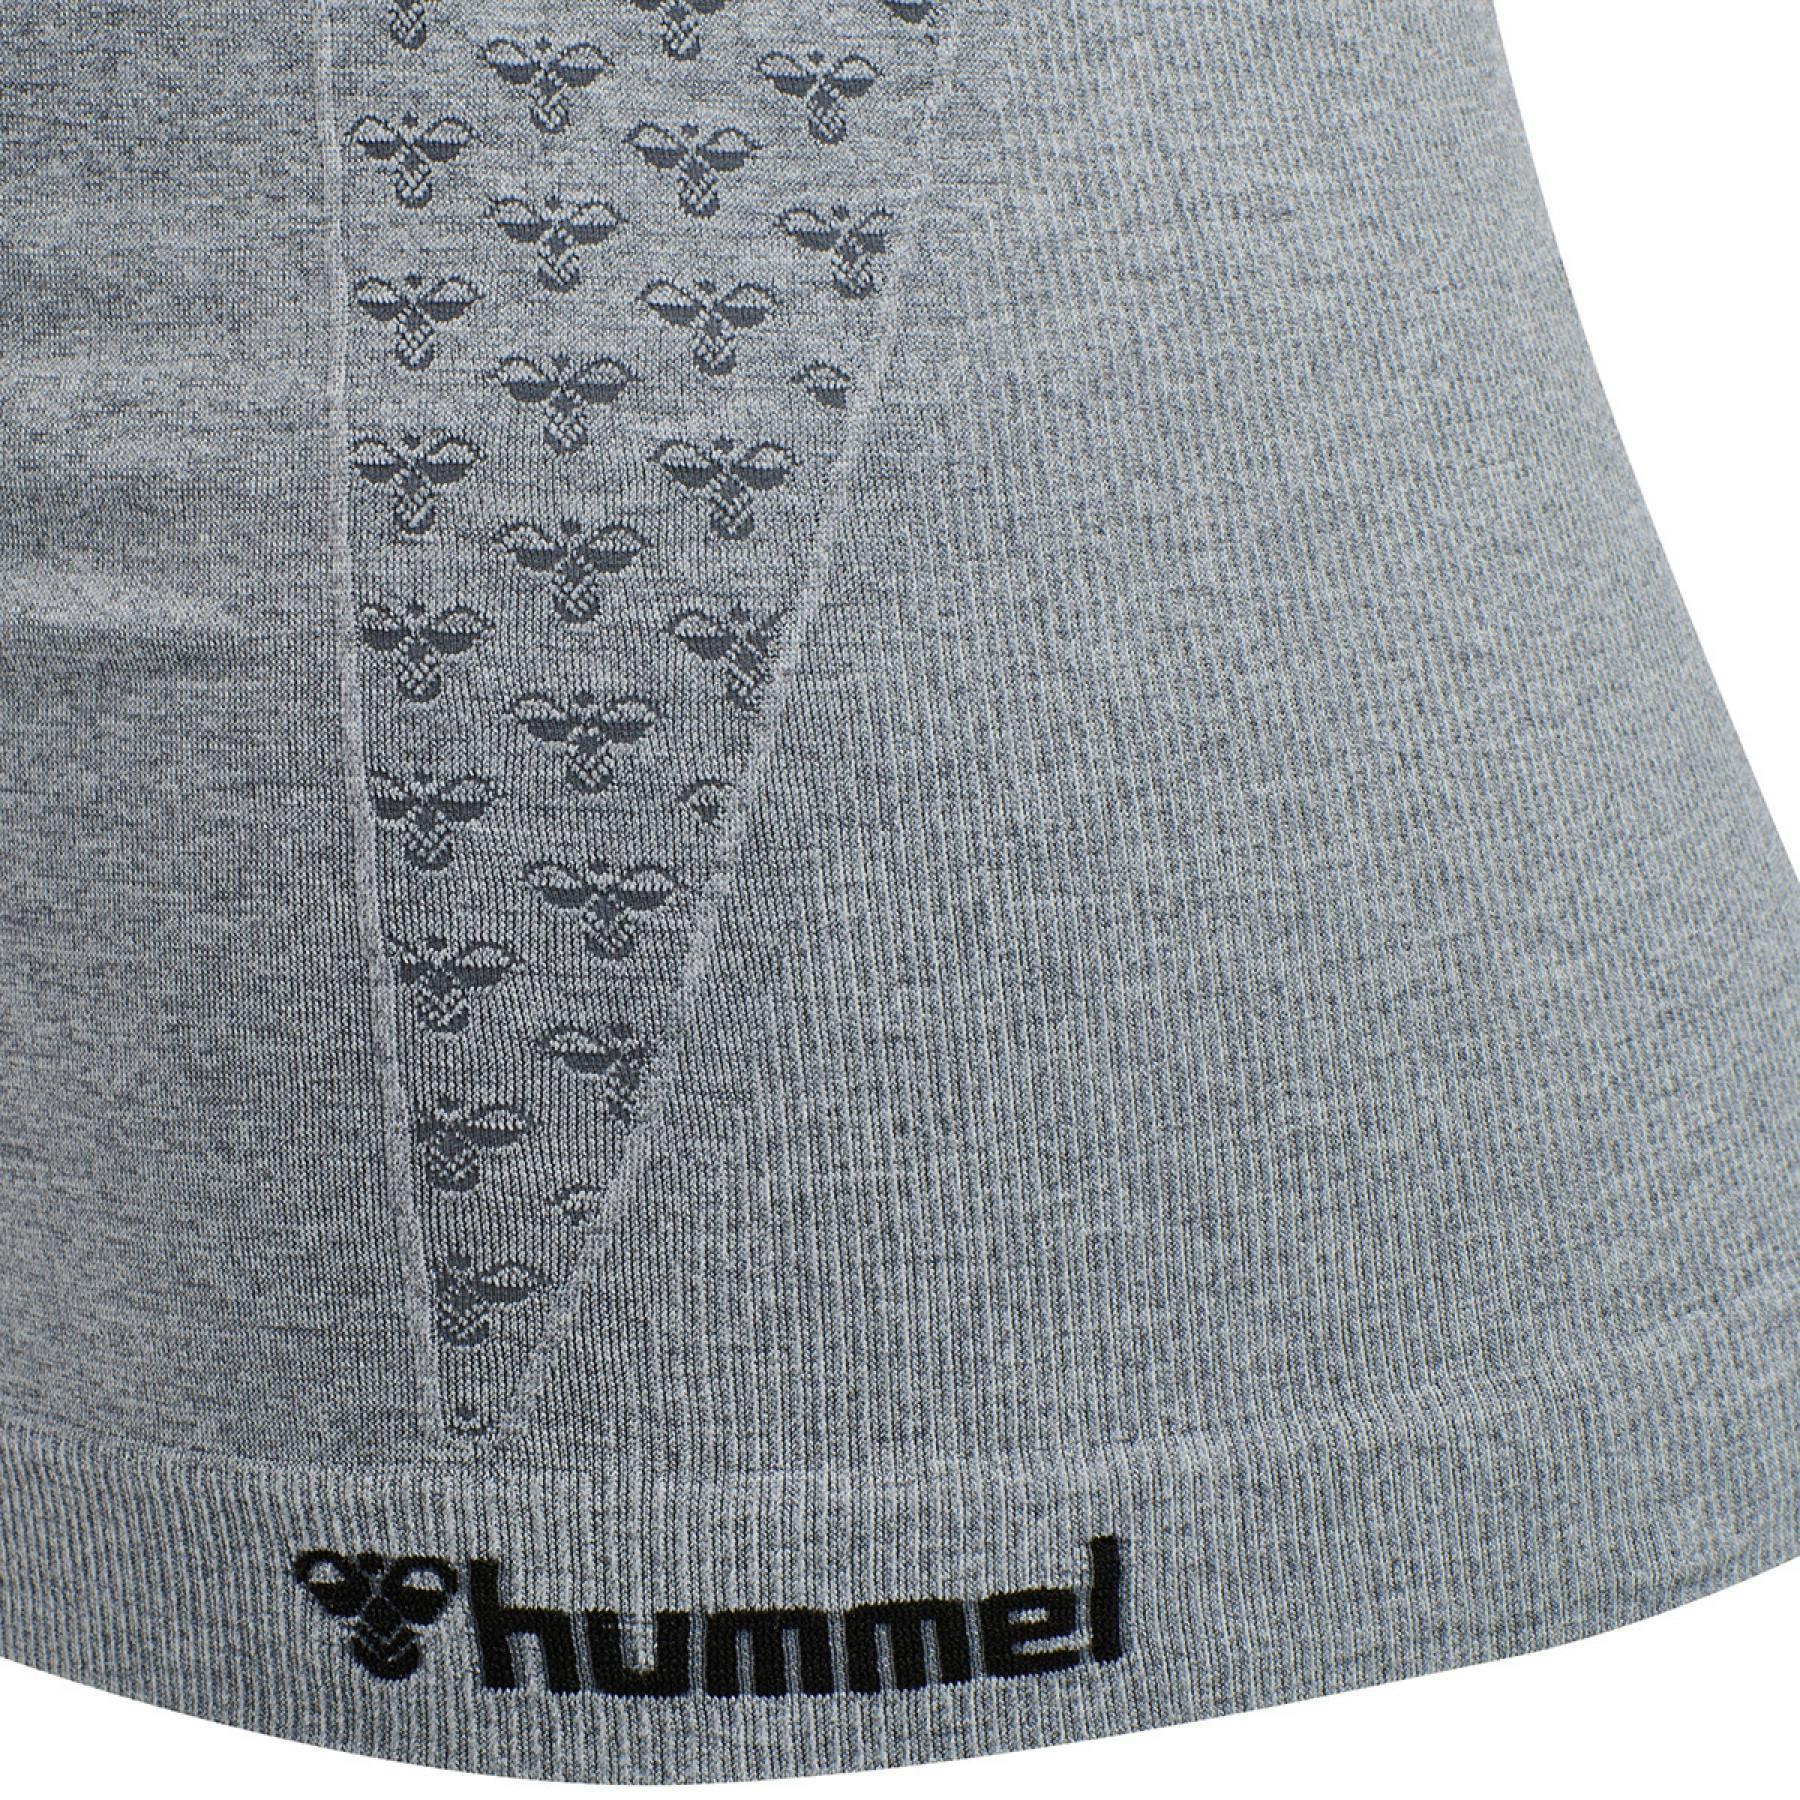 Camiseta de tirantes mujer Hummel hmlci top